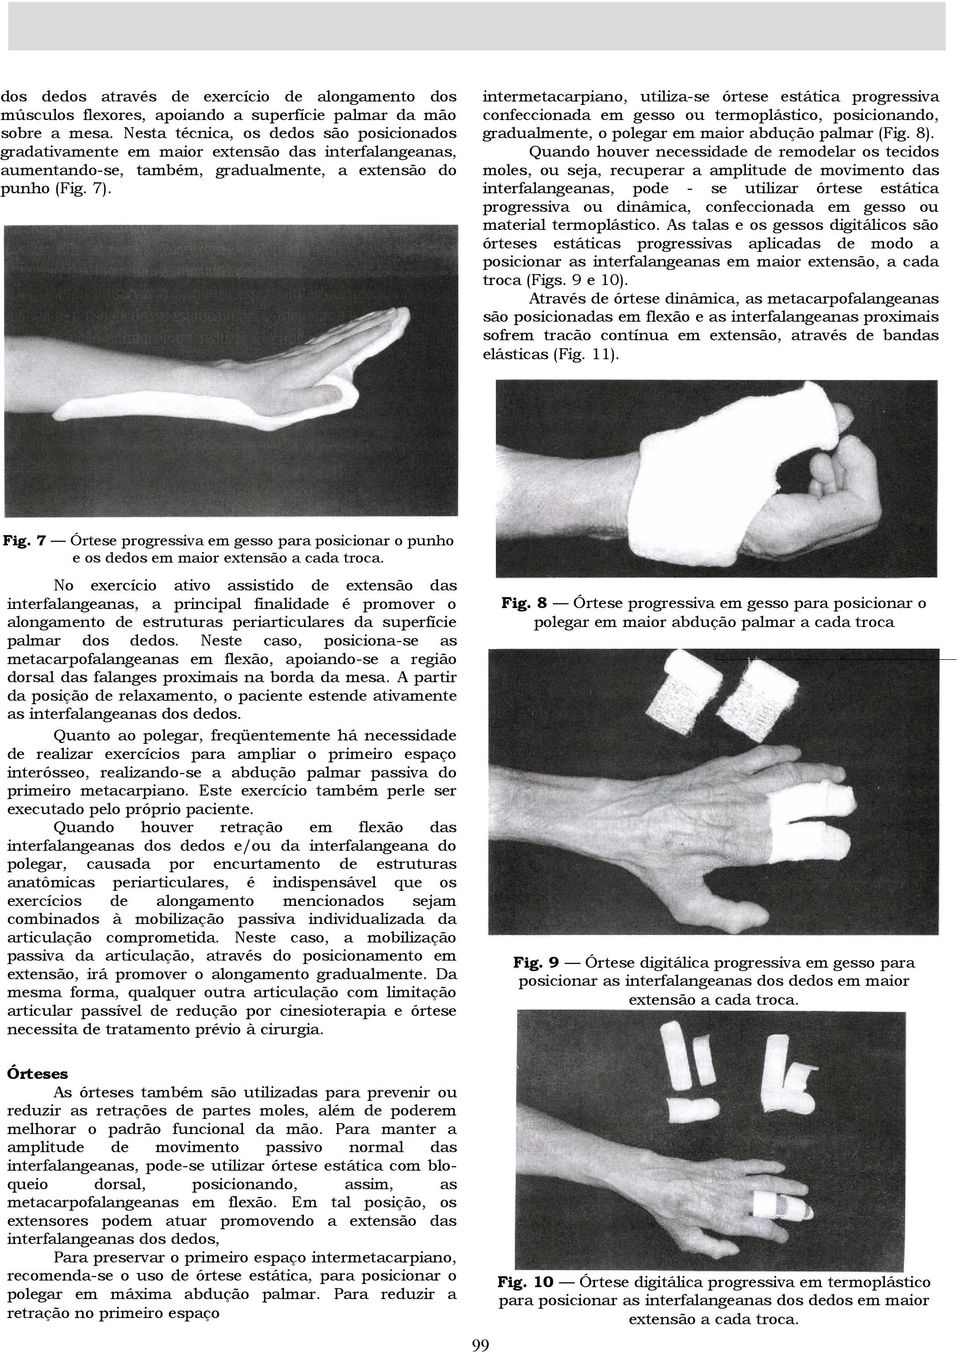 intermetacarpiano, utiliza-se órtese estática progressiva confeccionada em gesso ou termoplástico, posicionando, gradualmente, o polegar em maior abdução palmar (Fig. 8).